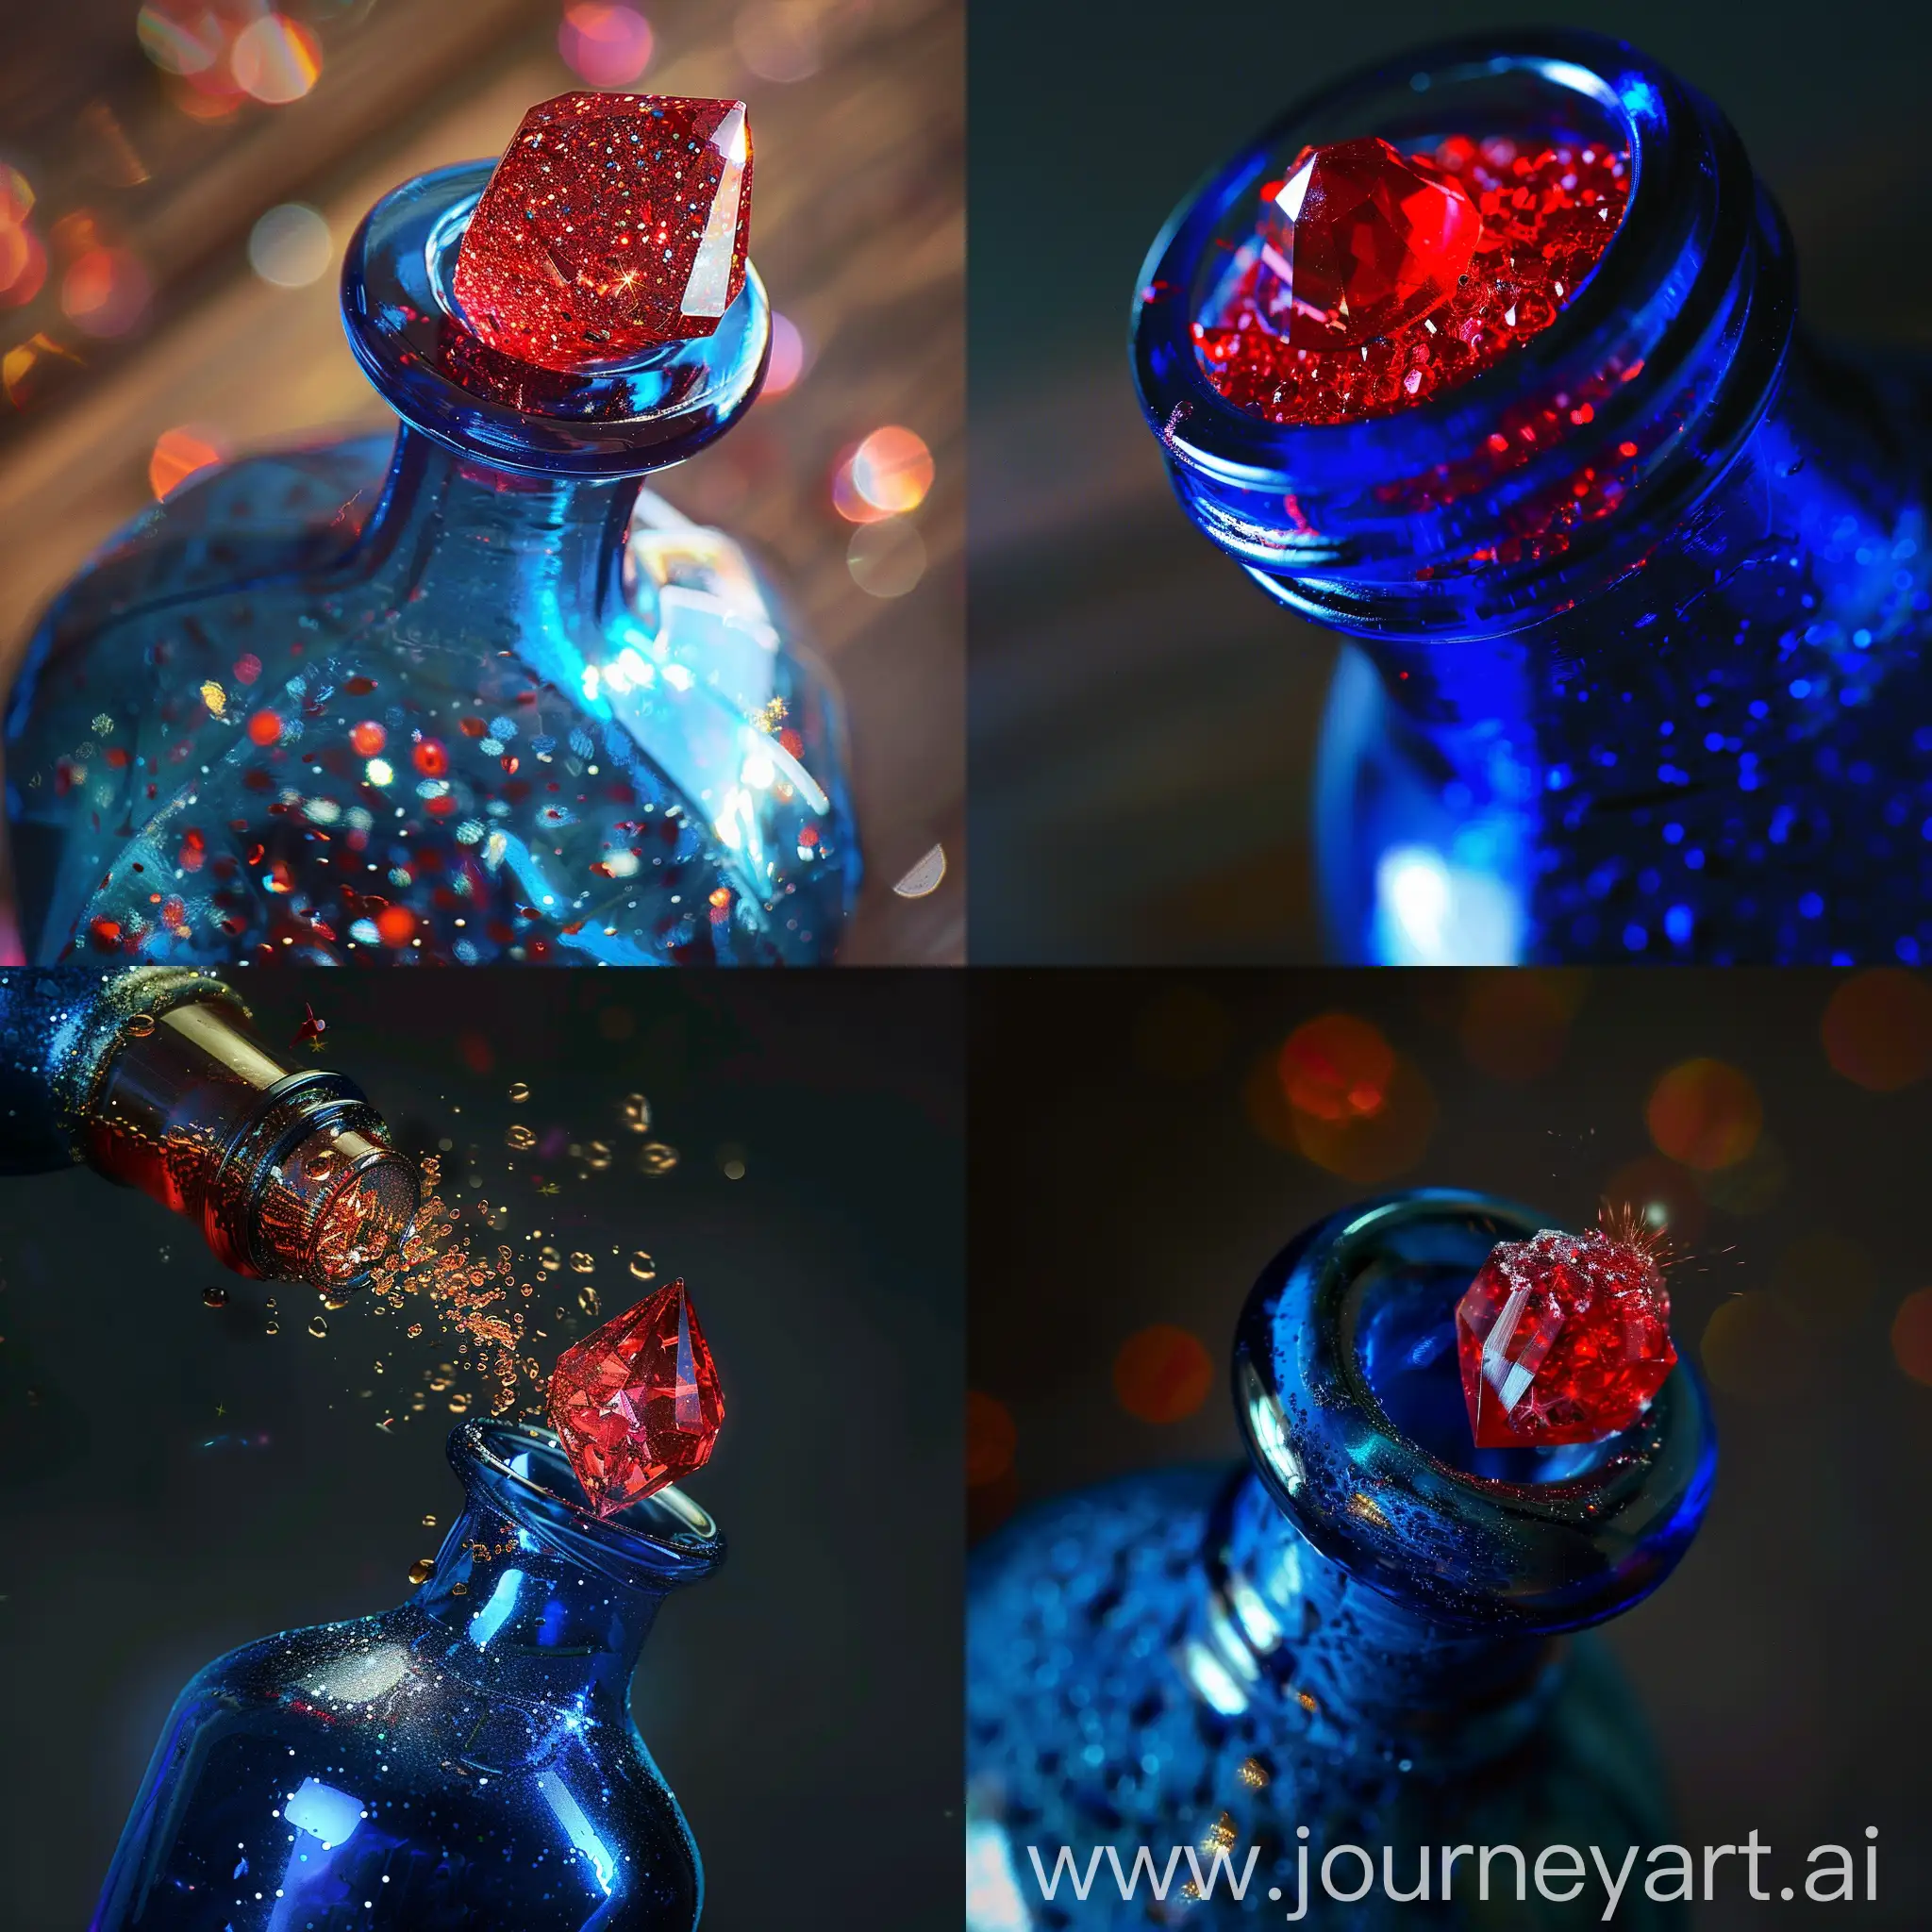 在一个装满灵丹妙药的蓝色瓶子的瓶口有一个闪闪发光的红色宝石